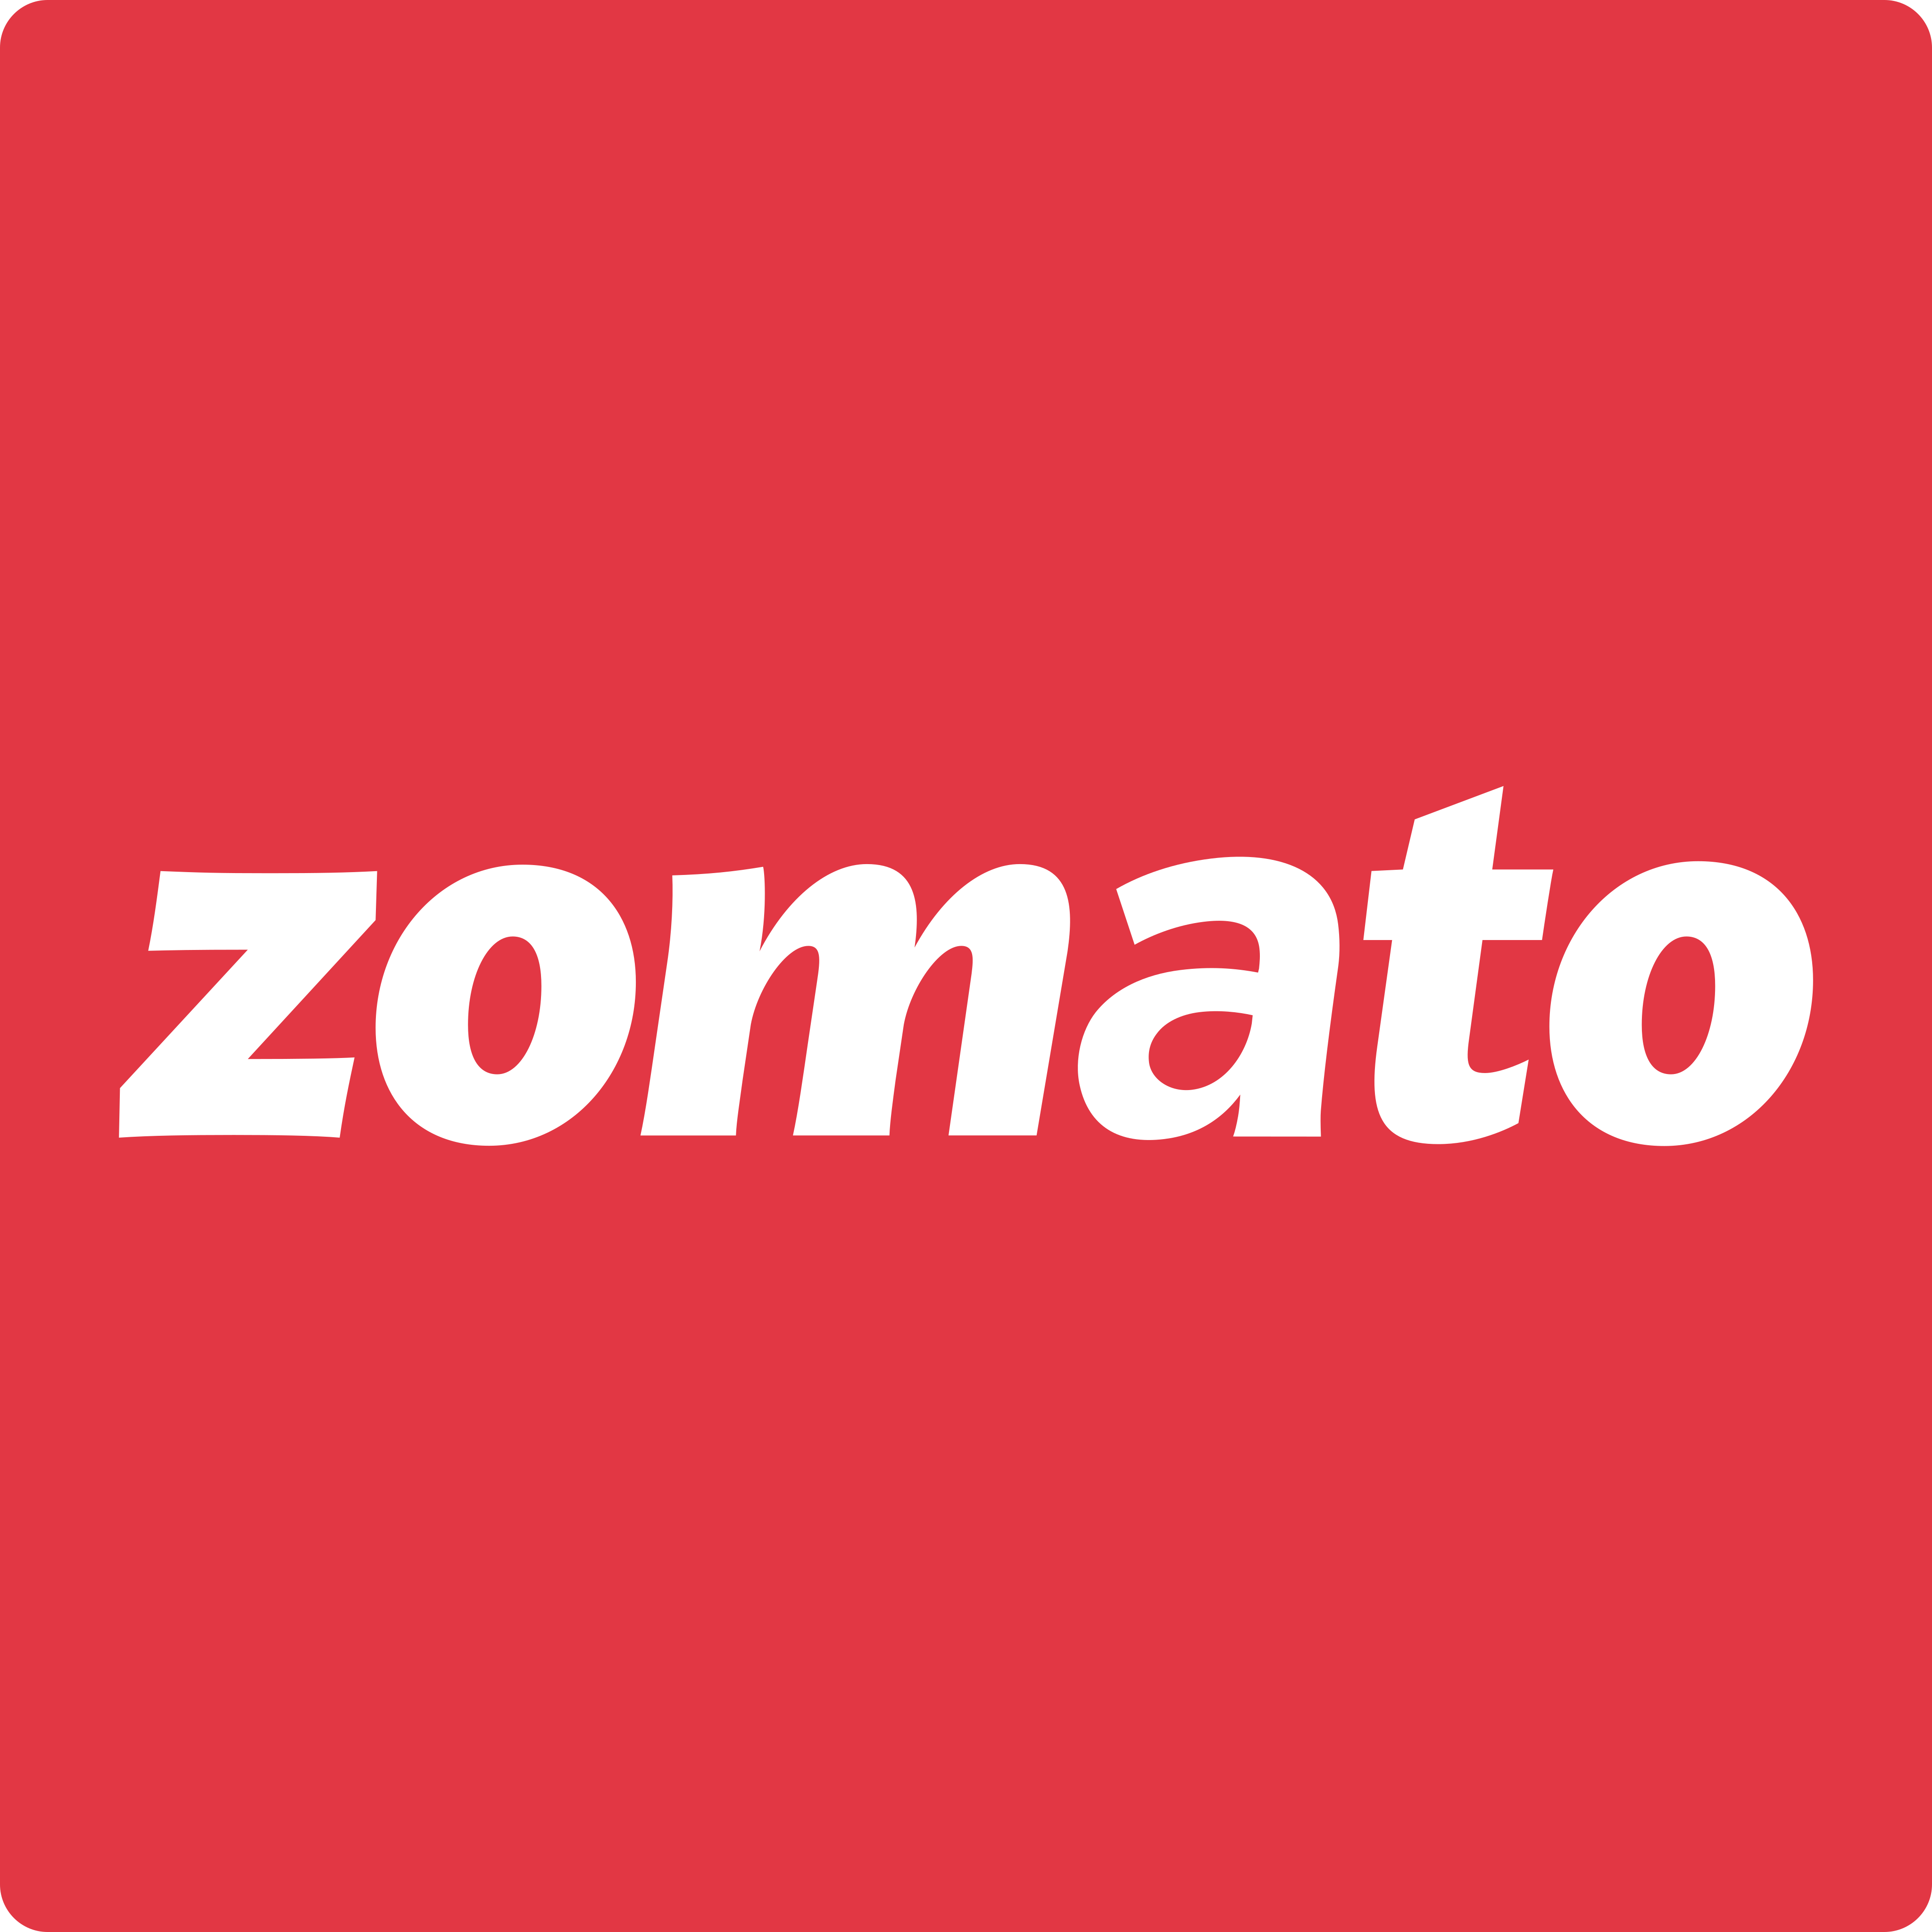 zomato logo 1 - Zomato Logo